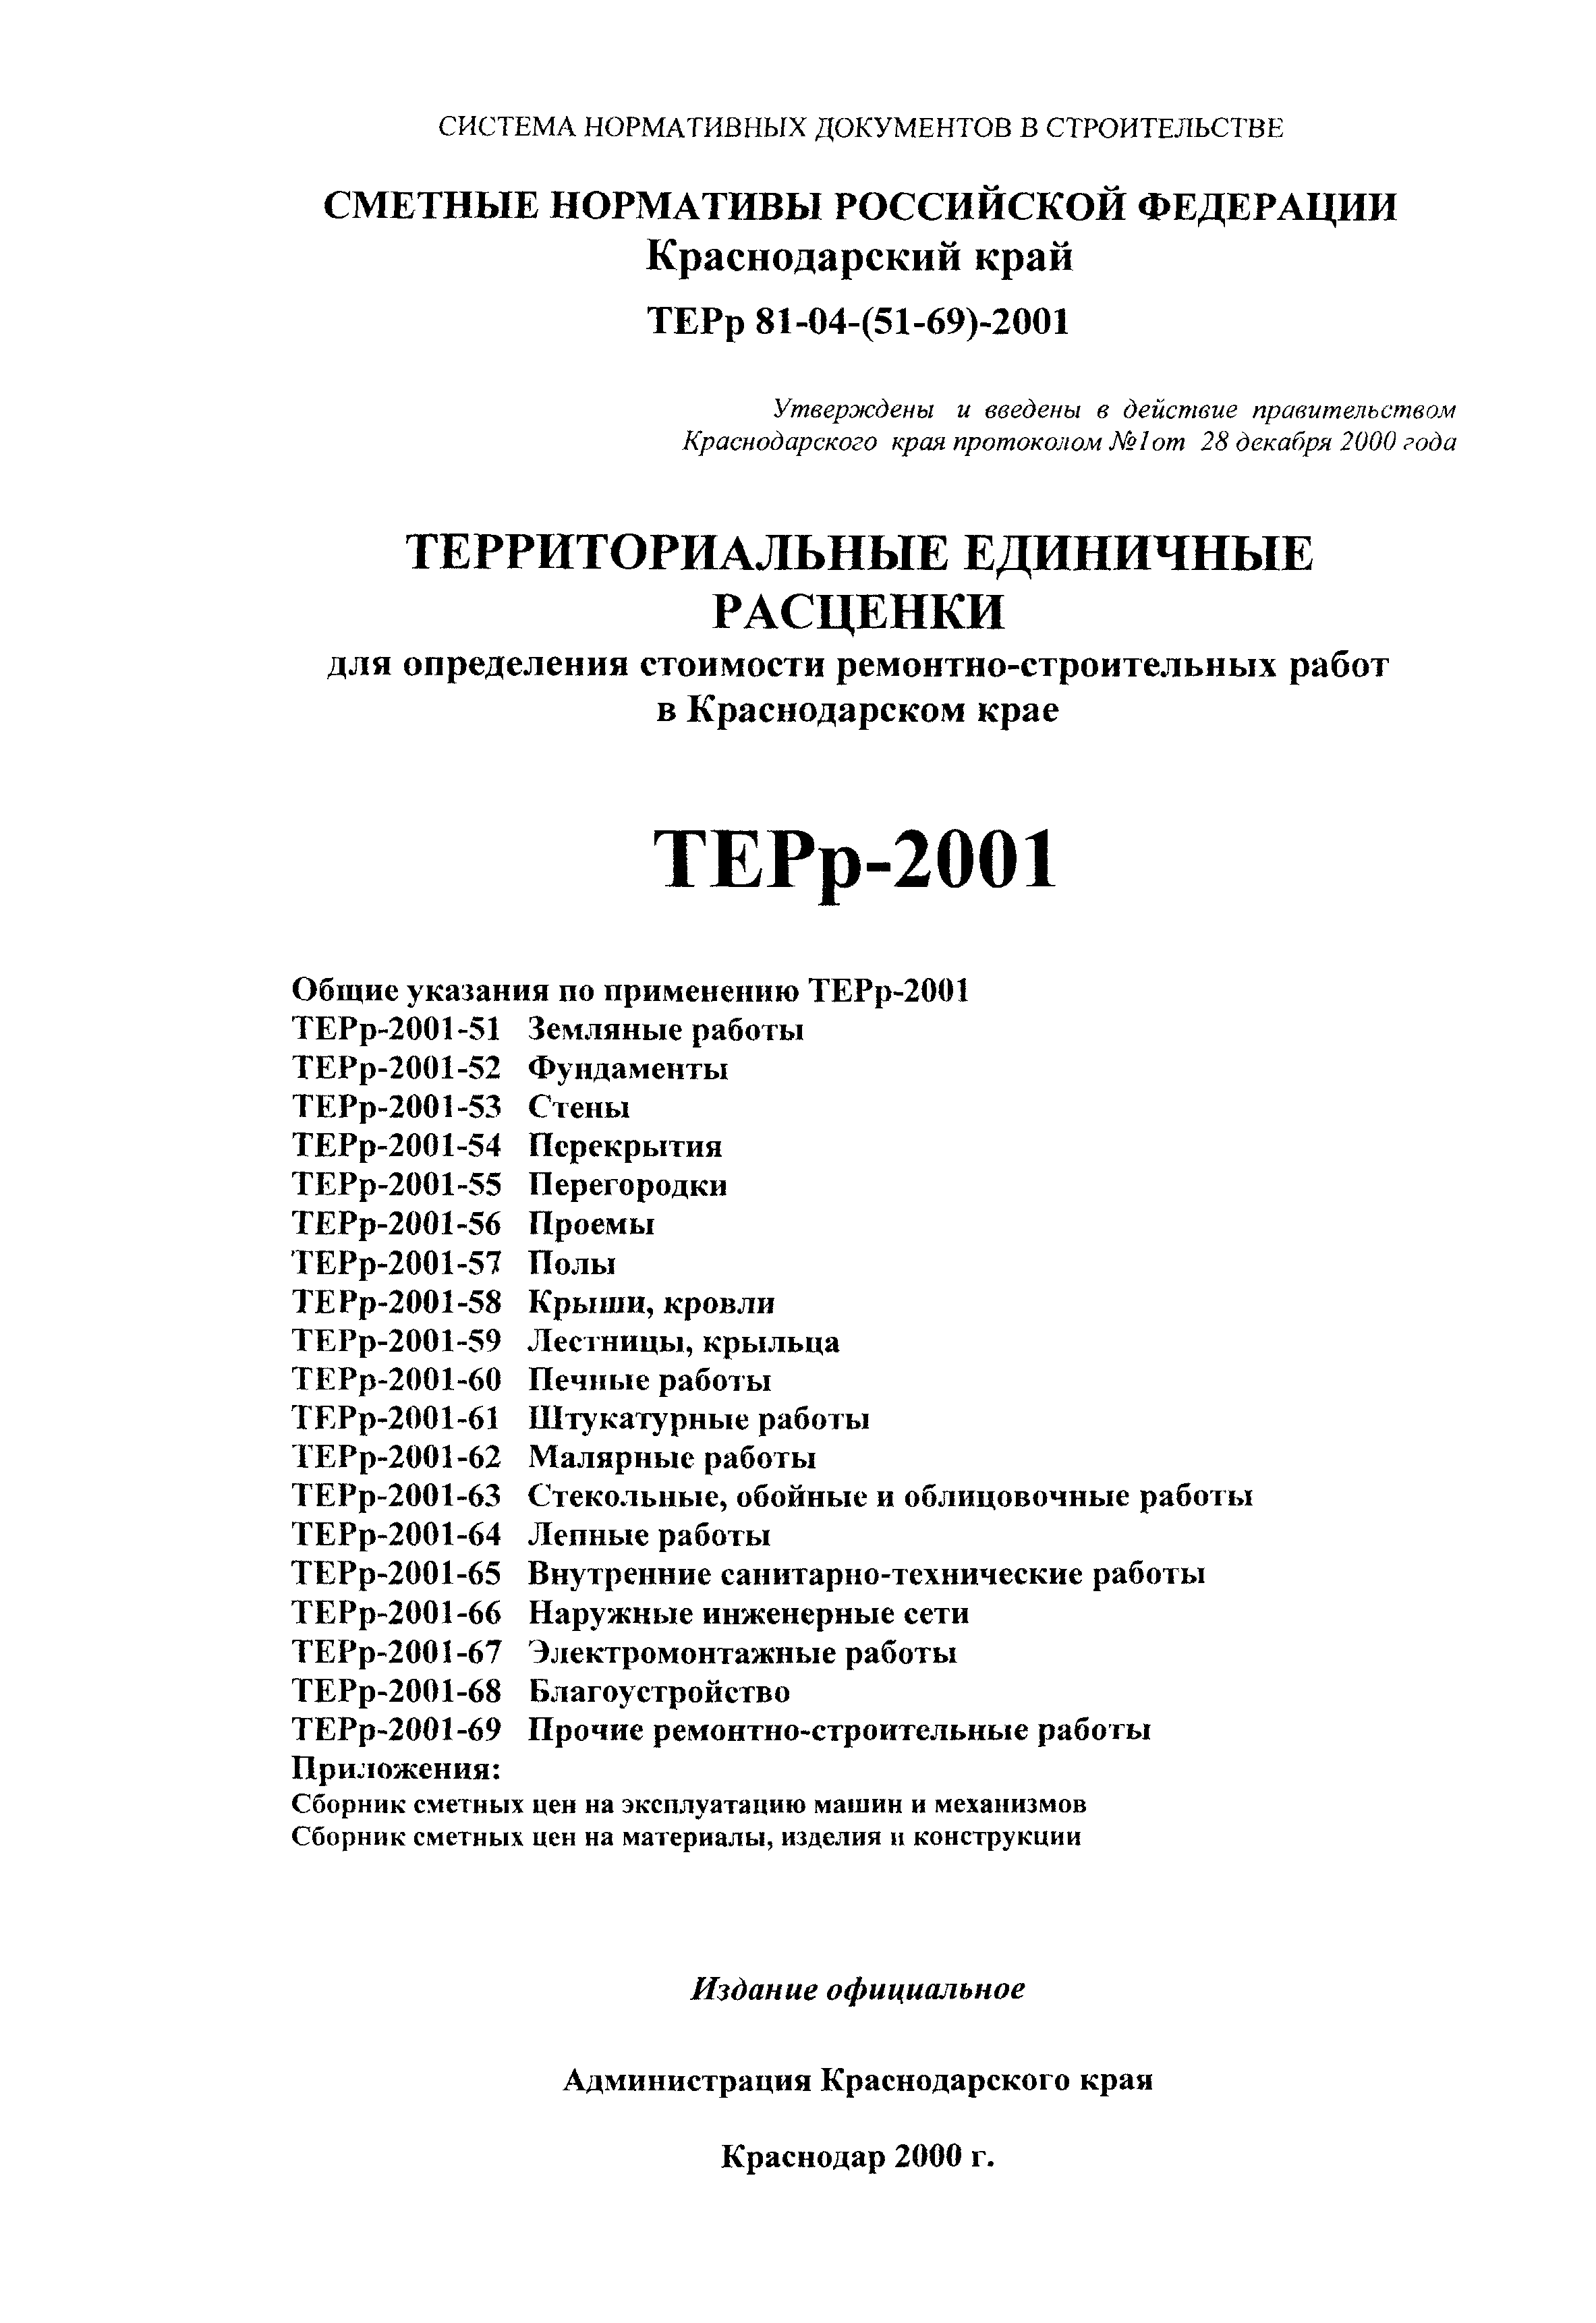 ТЕРр Краснодарского края 2001-52